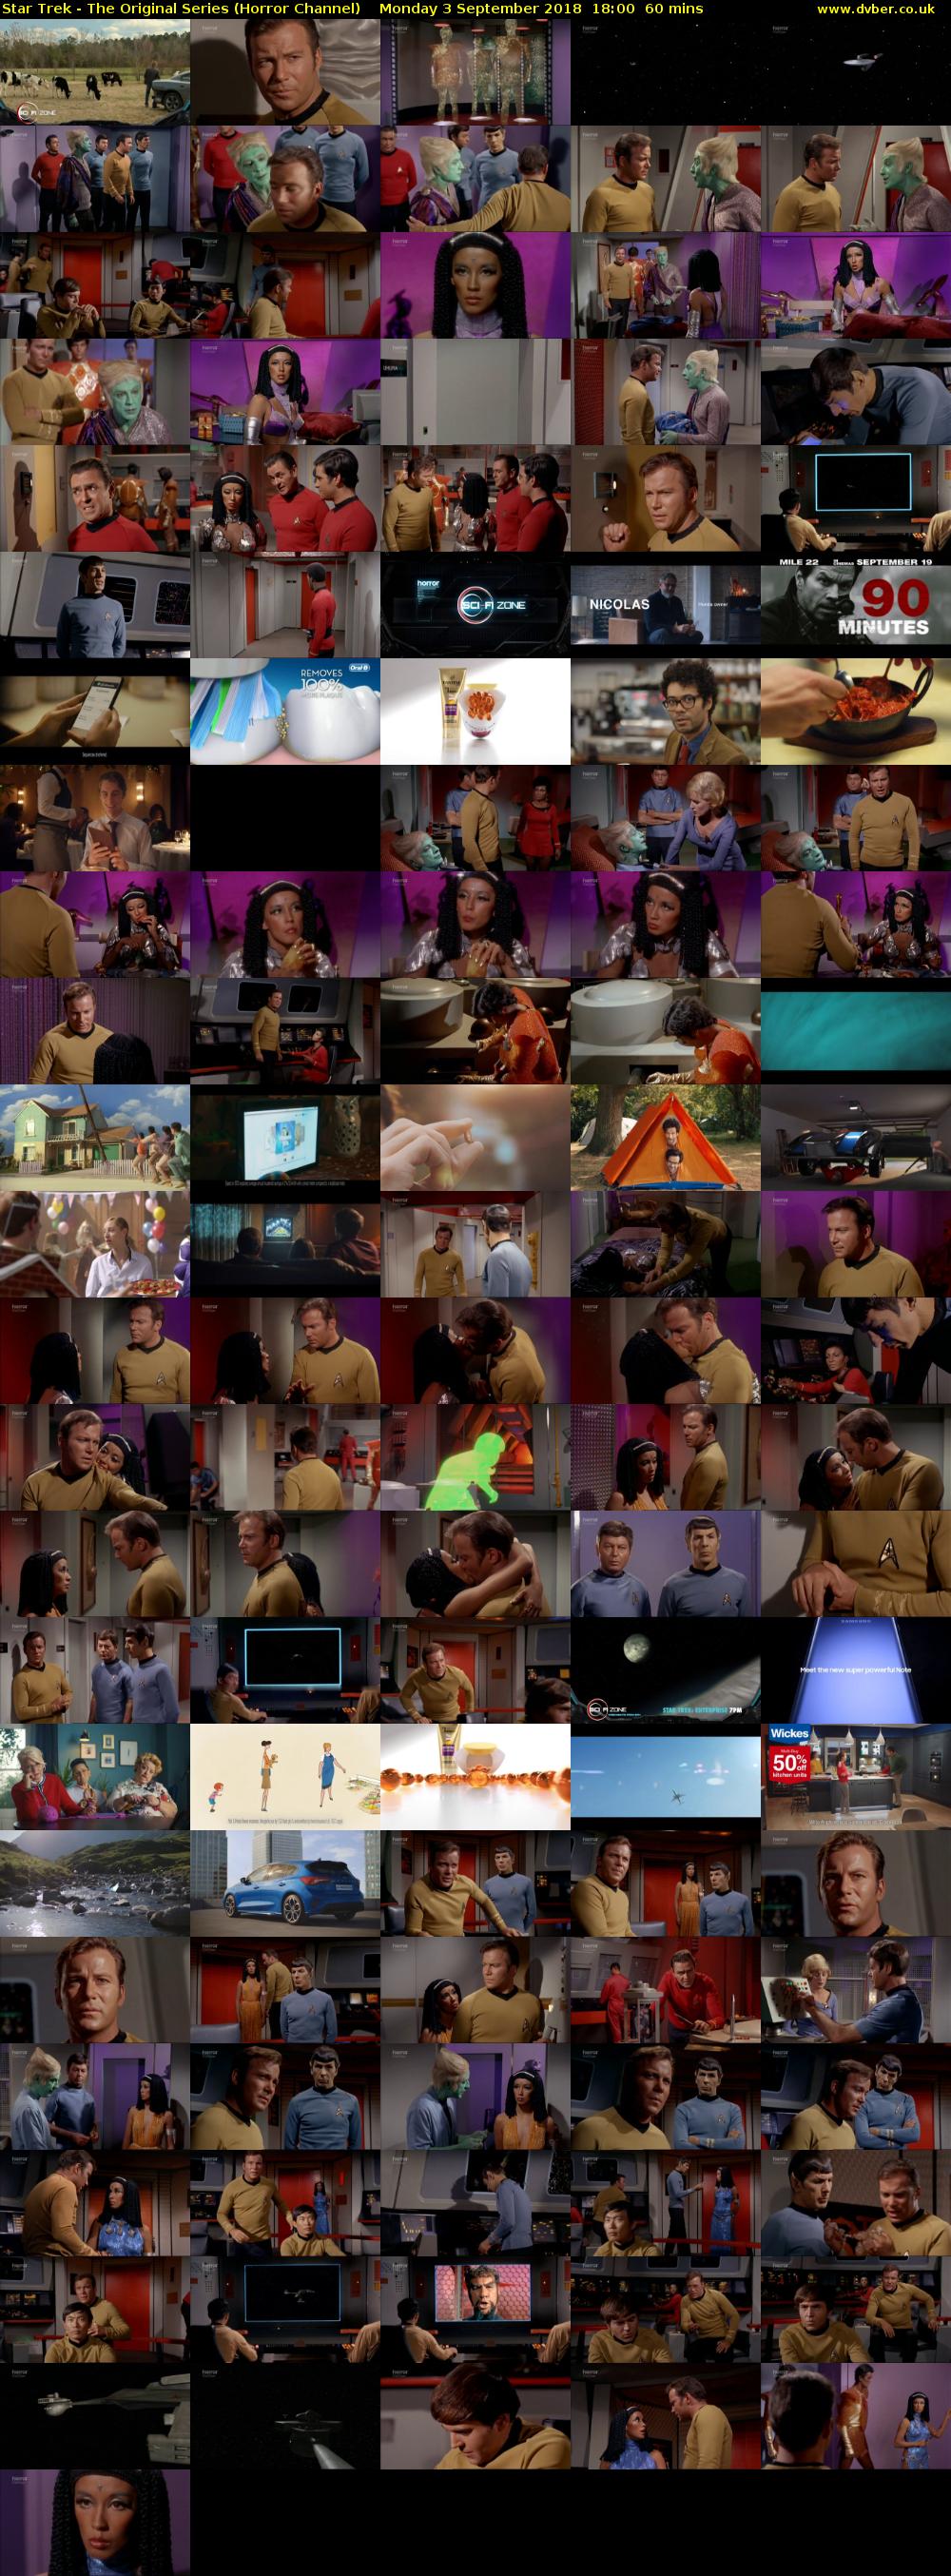 Star Trek - The Original Series (Horror Channel) Monday 3 September 2018 18:00 - 19:00